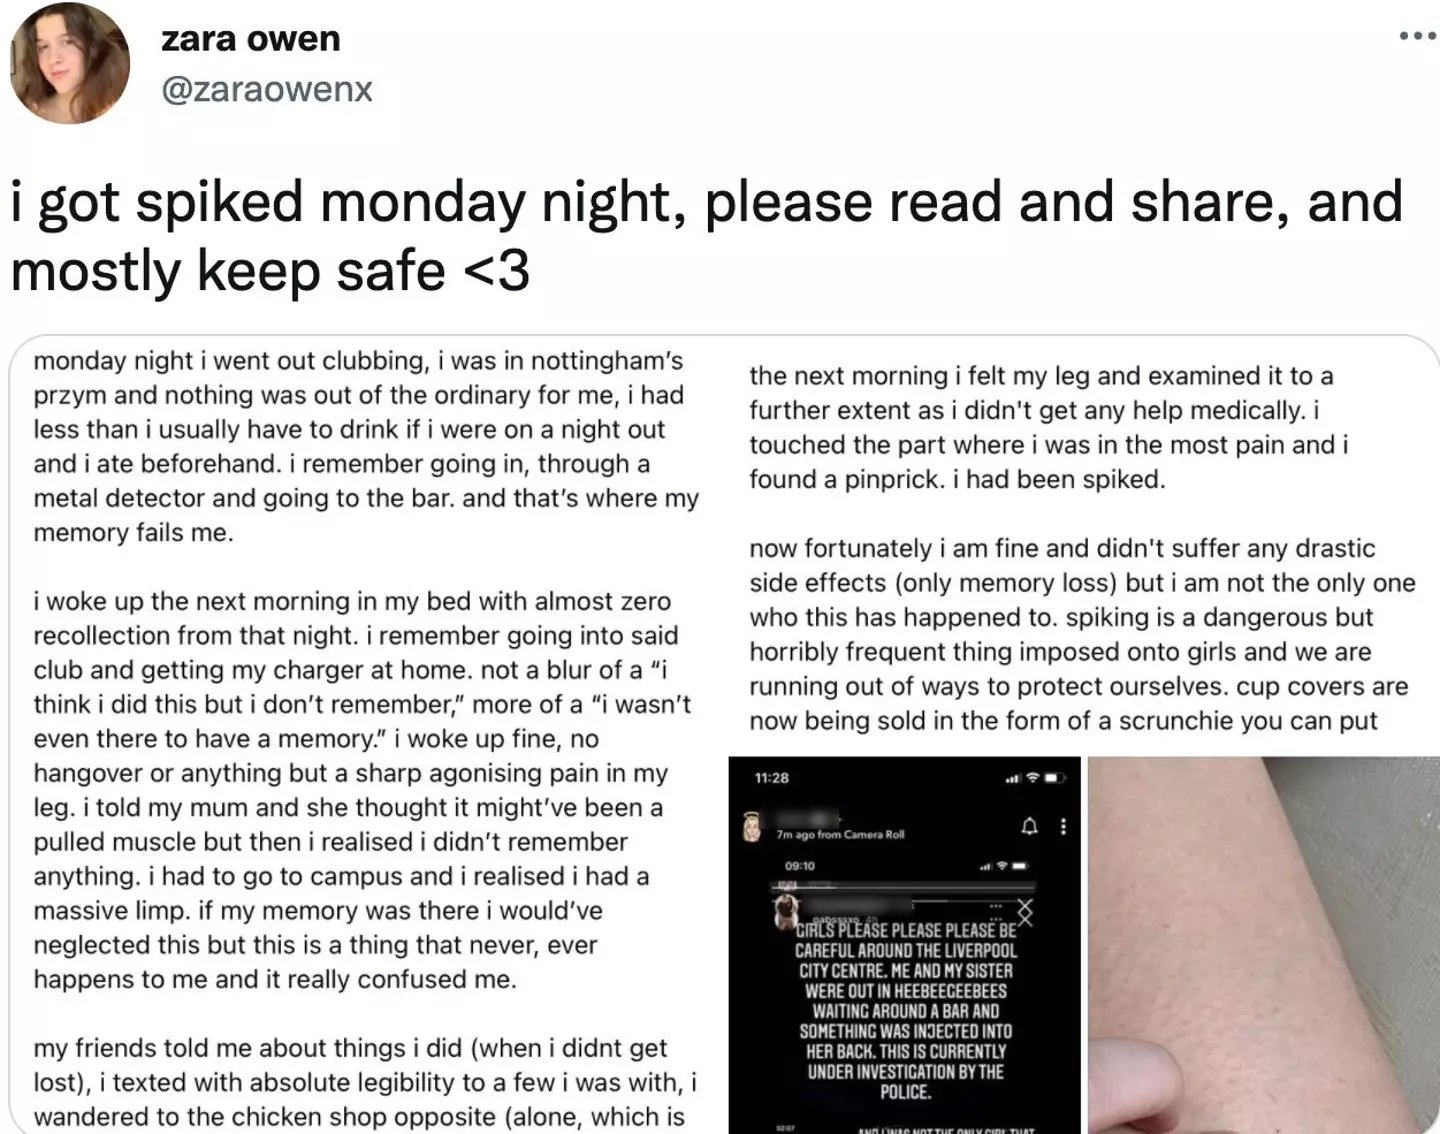 Zara shared her story on Twitter (